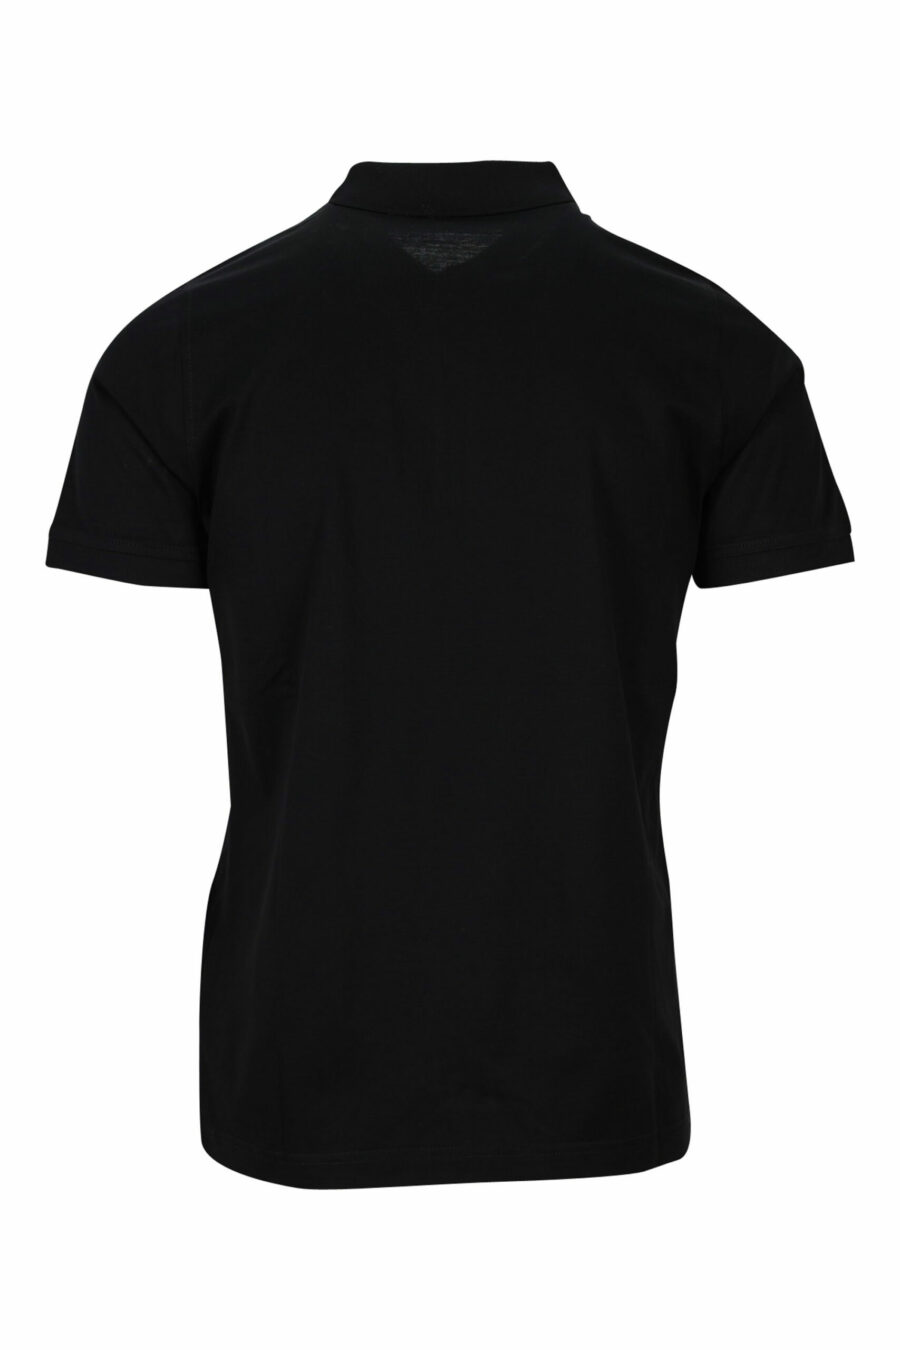 Schwarzes Reißverschluss-Poloshirt mit schwarzem Minilogue - 4062226397179 1 skaliert